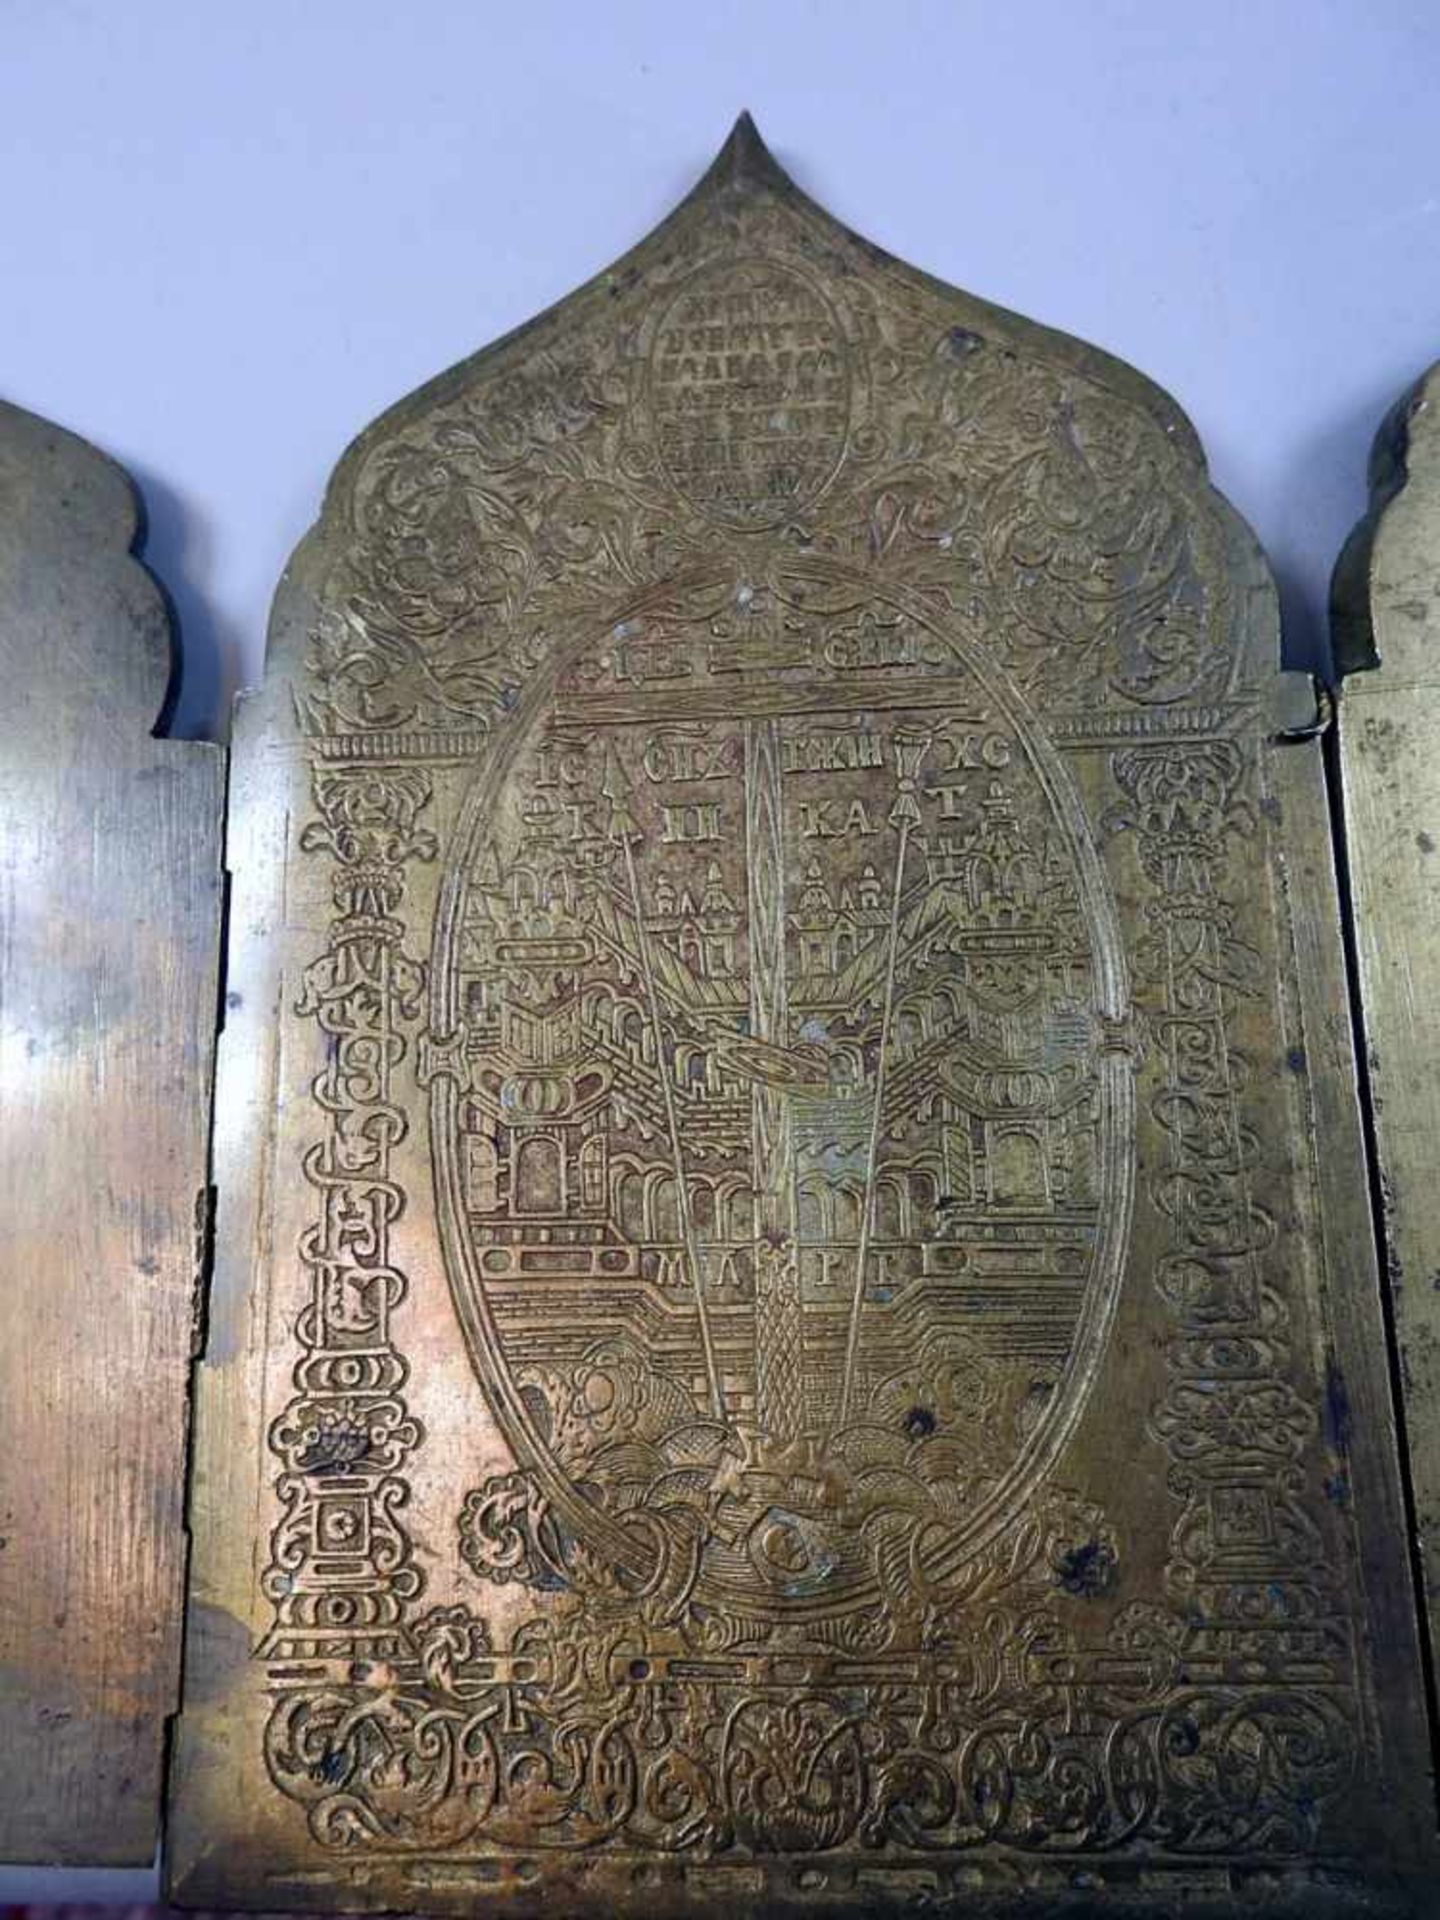 Reiseikone Messing, 4-teilig, mit russisch-orthodoxer Ikonographie. Mit Inschriften, 12 großen - Bild 2 aus 2